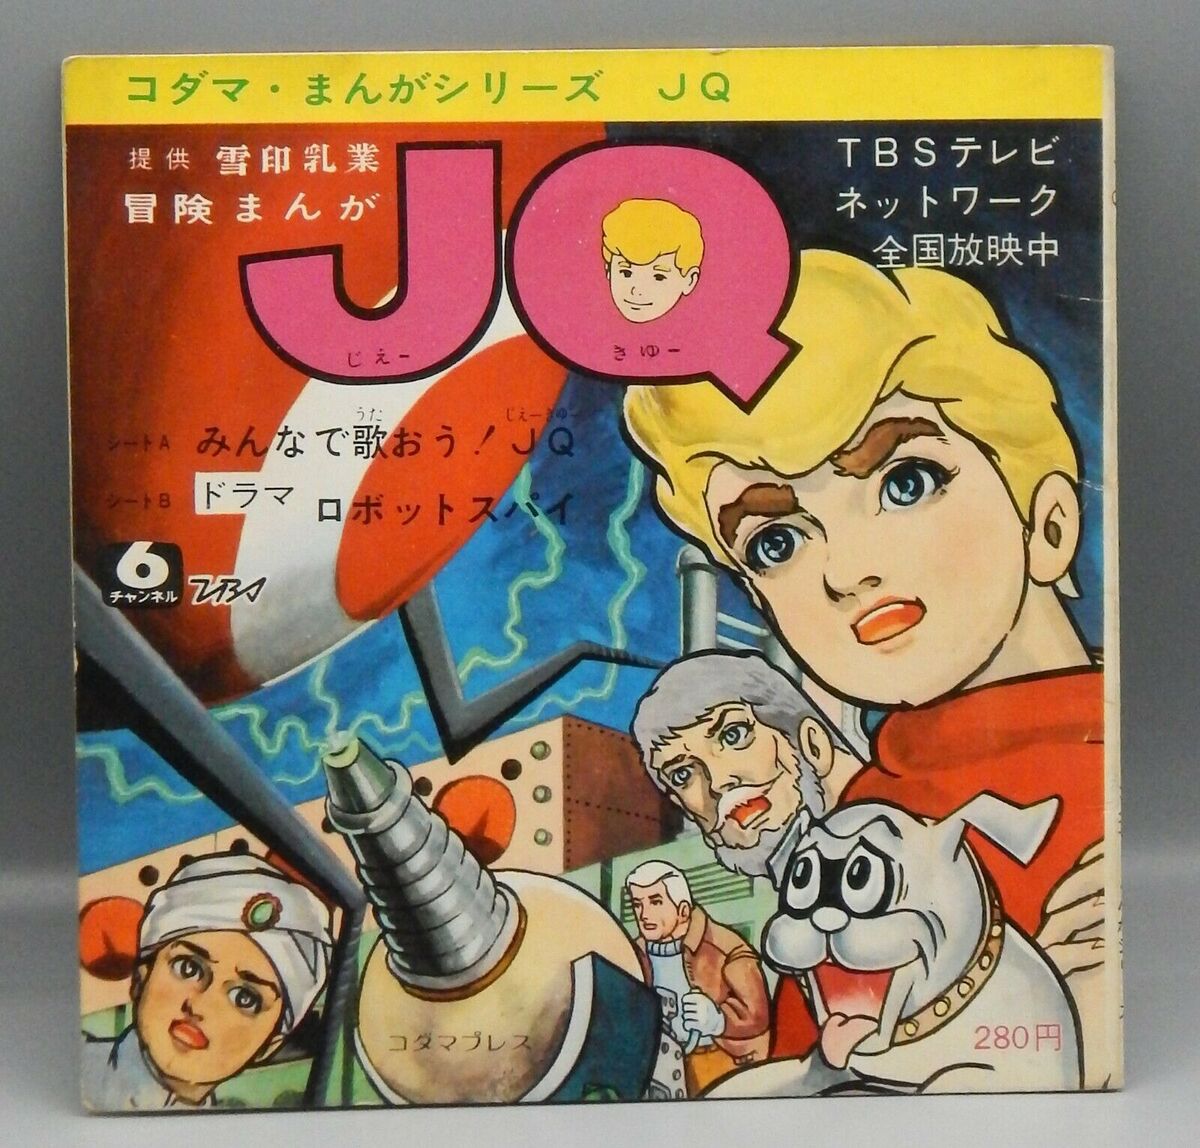 Japanese merchandise | Jonny Quest Wiki | Fandom